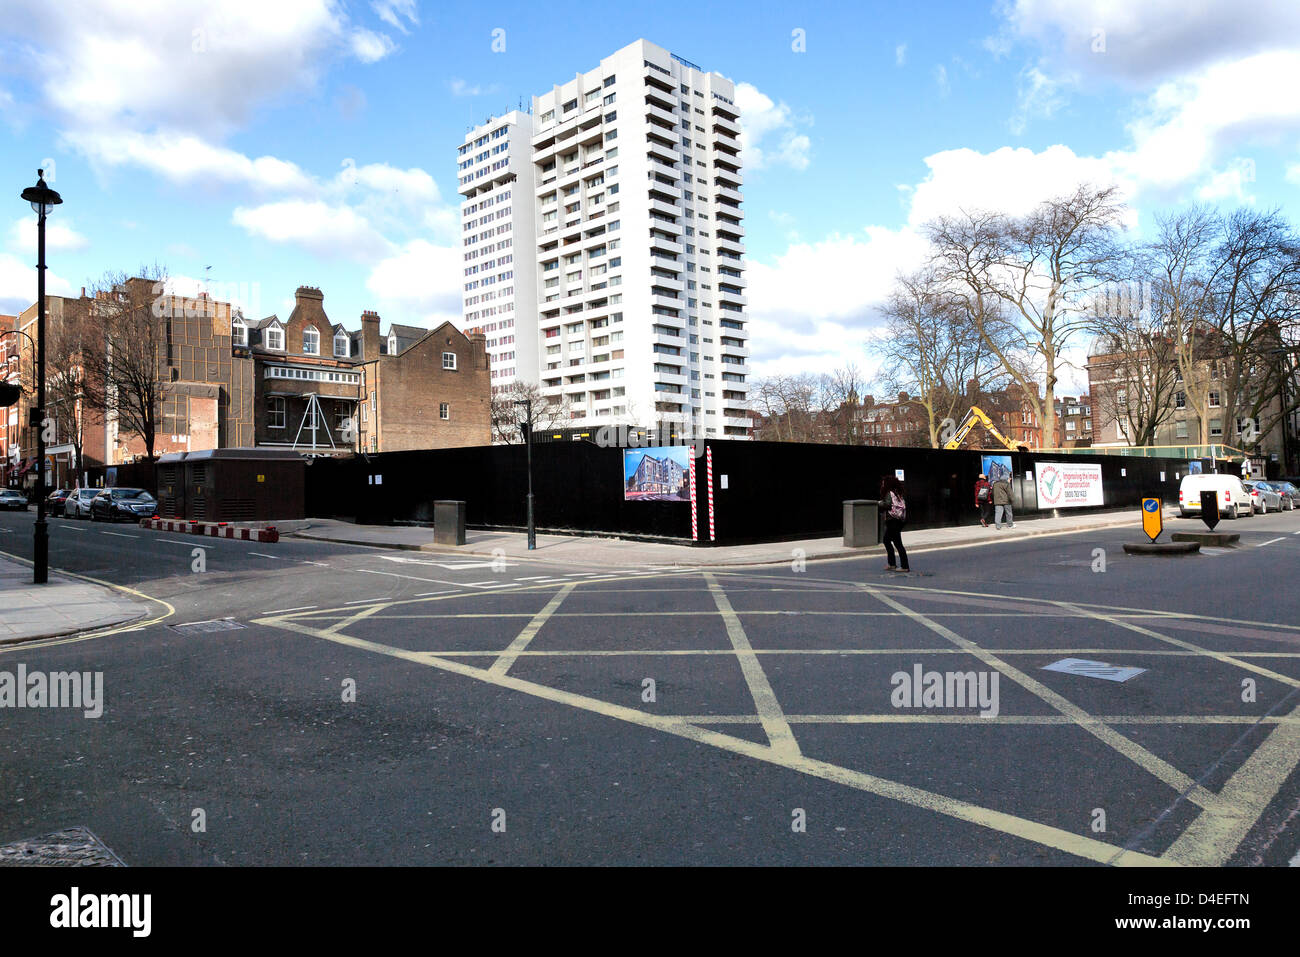 Londra, Regno Unito. Xii Marzo 2013. 'Ex Chiltern Street parcheggio NCP' lo sviluppo del sito, incrocio con Paddington Street, Marylebone. Credito: Keith Erskine / Alamy Live News Foto Stock